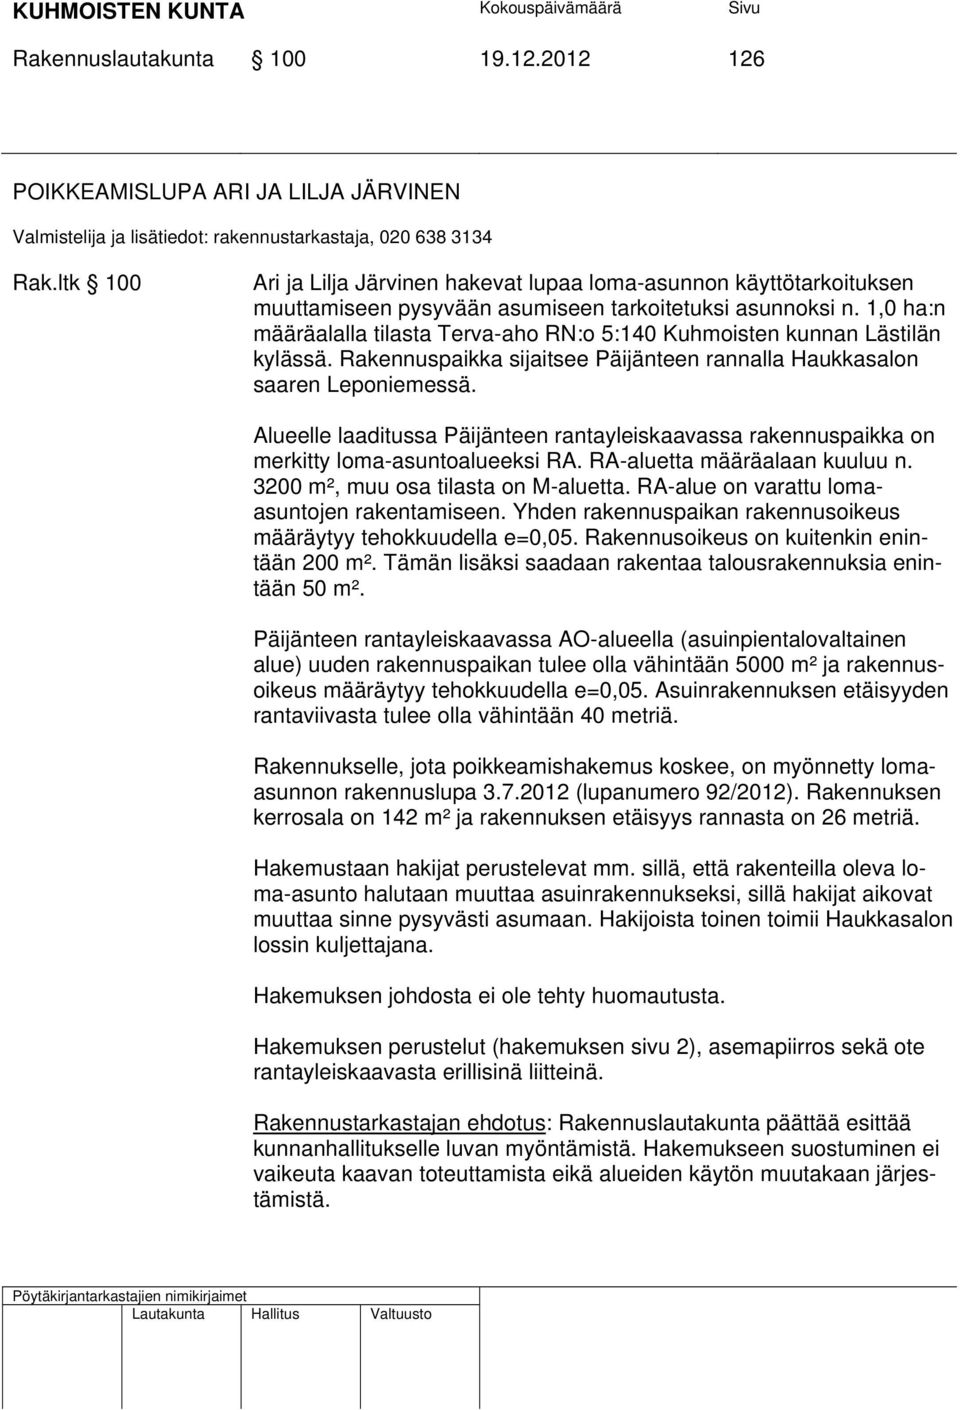 1,0 ha:n määräalalla tilasta Terva-aho RN:o 5:140 Kuhmoisten kunnan Lästilän kylässä. Rakennuspaikka sijaitsee Päijänteen rannalla Haukkasalon saaren Leponiemessä.